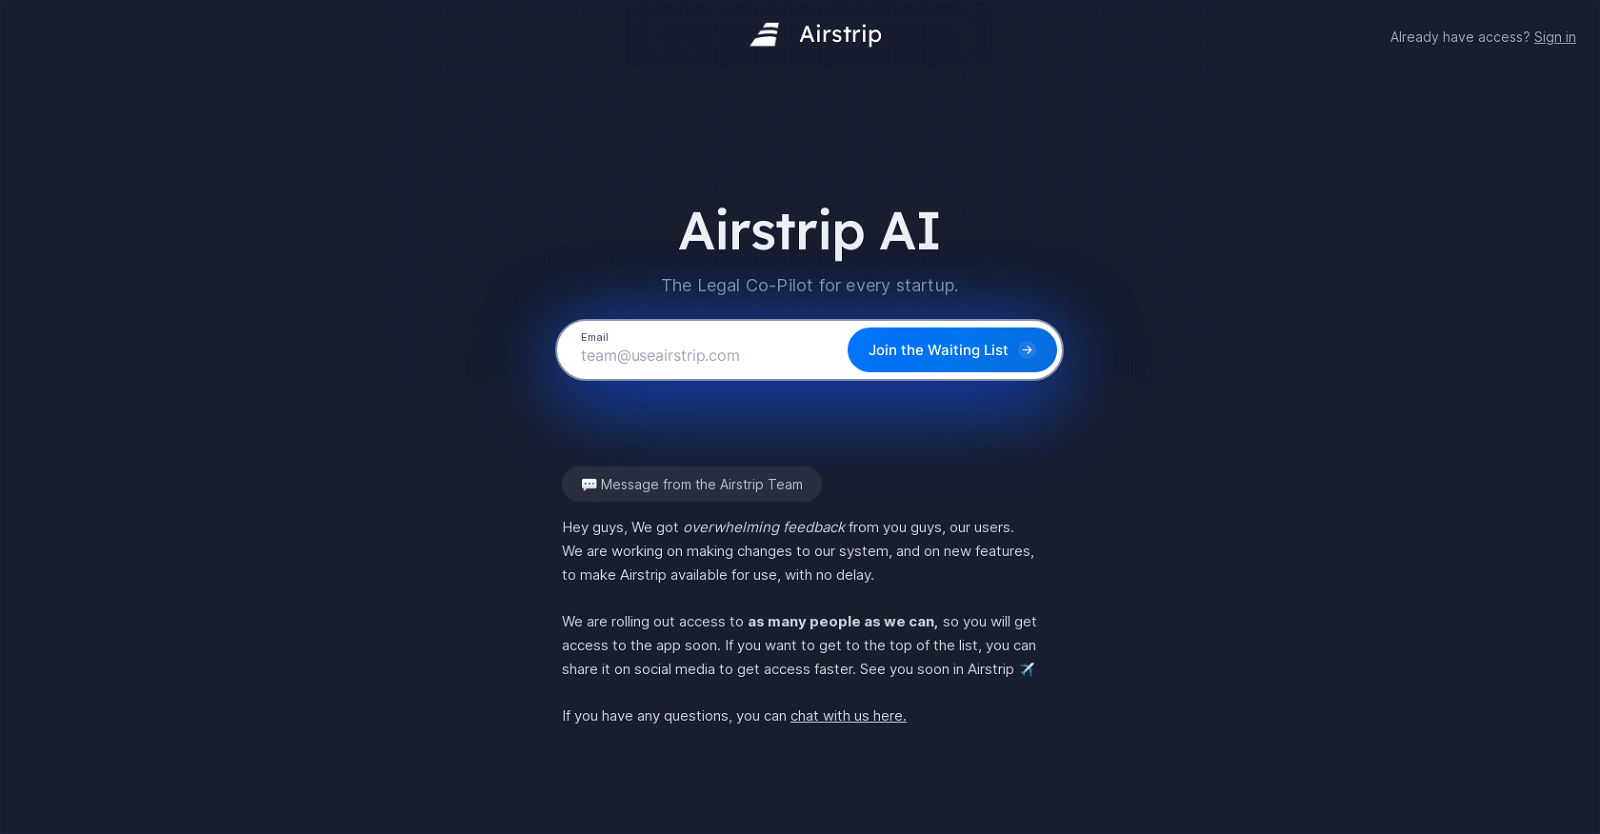 Airstrip AI